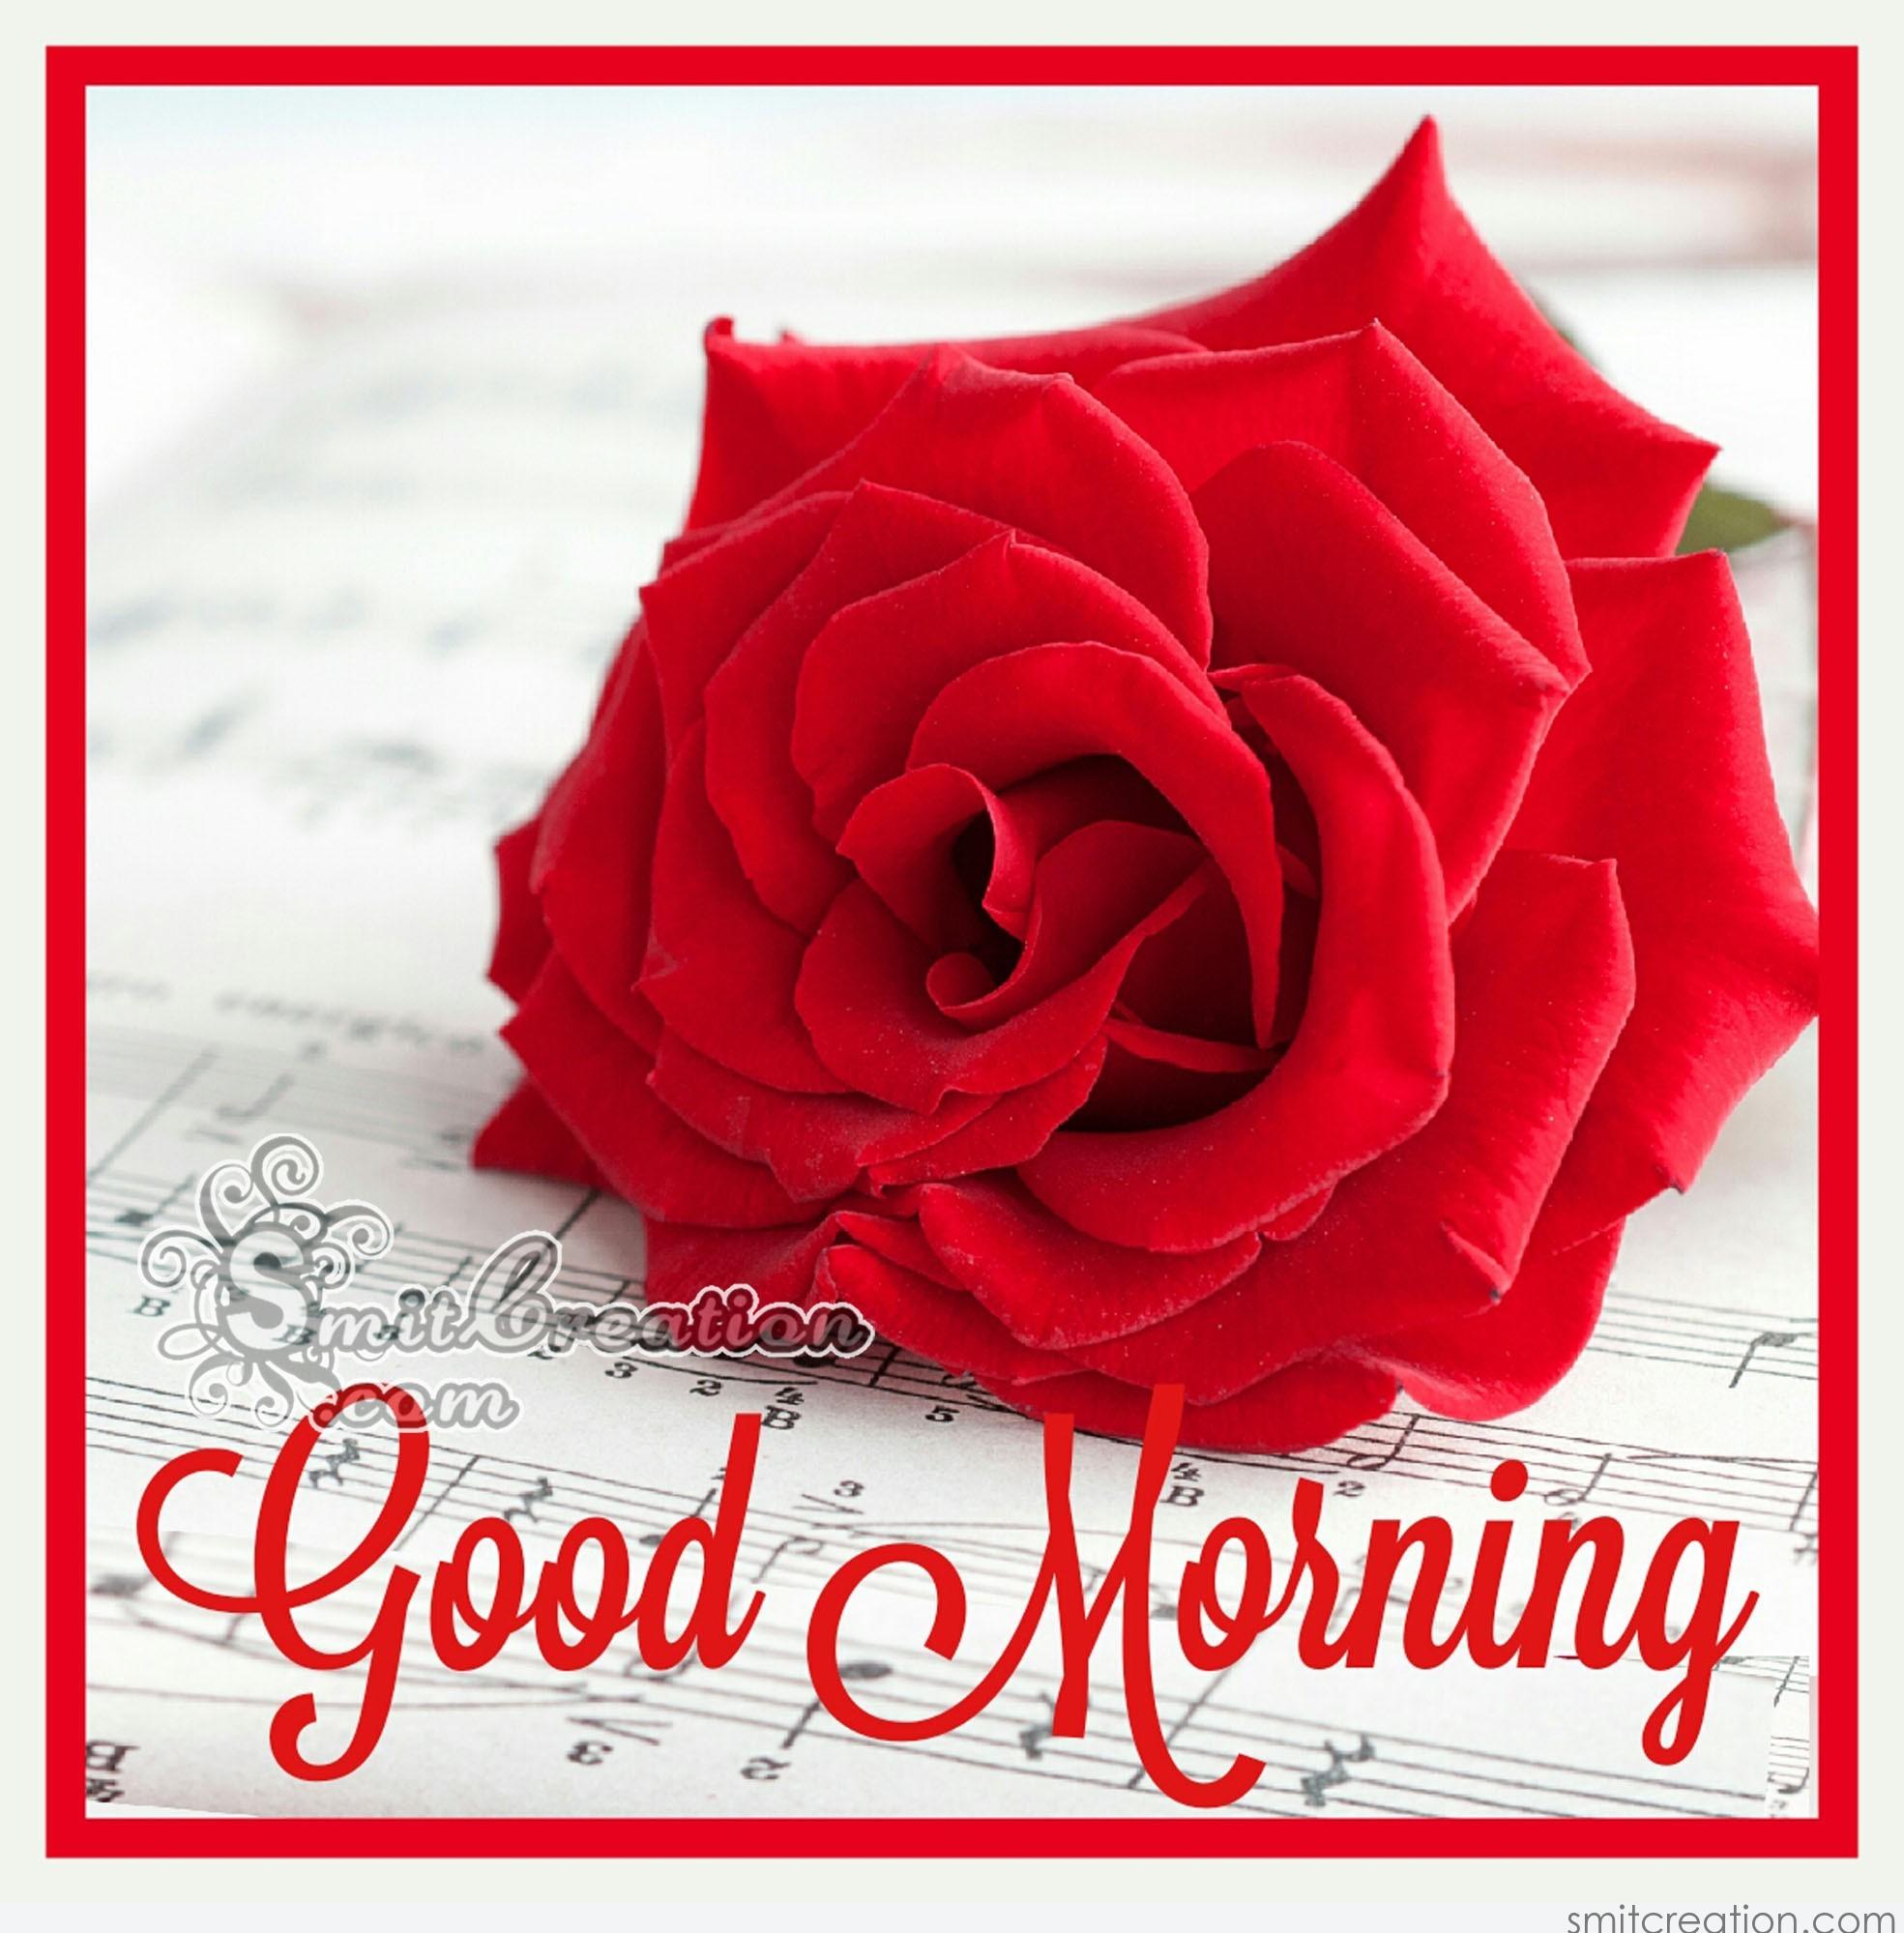 Good Morning Rose Image